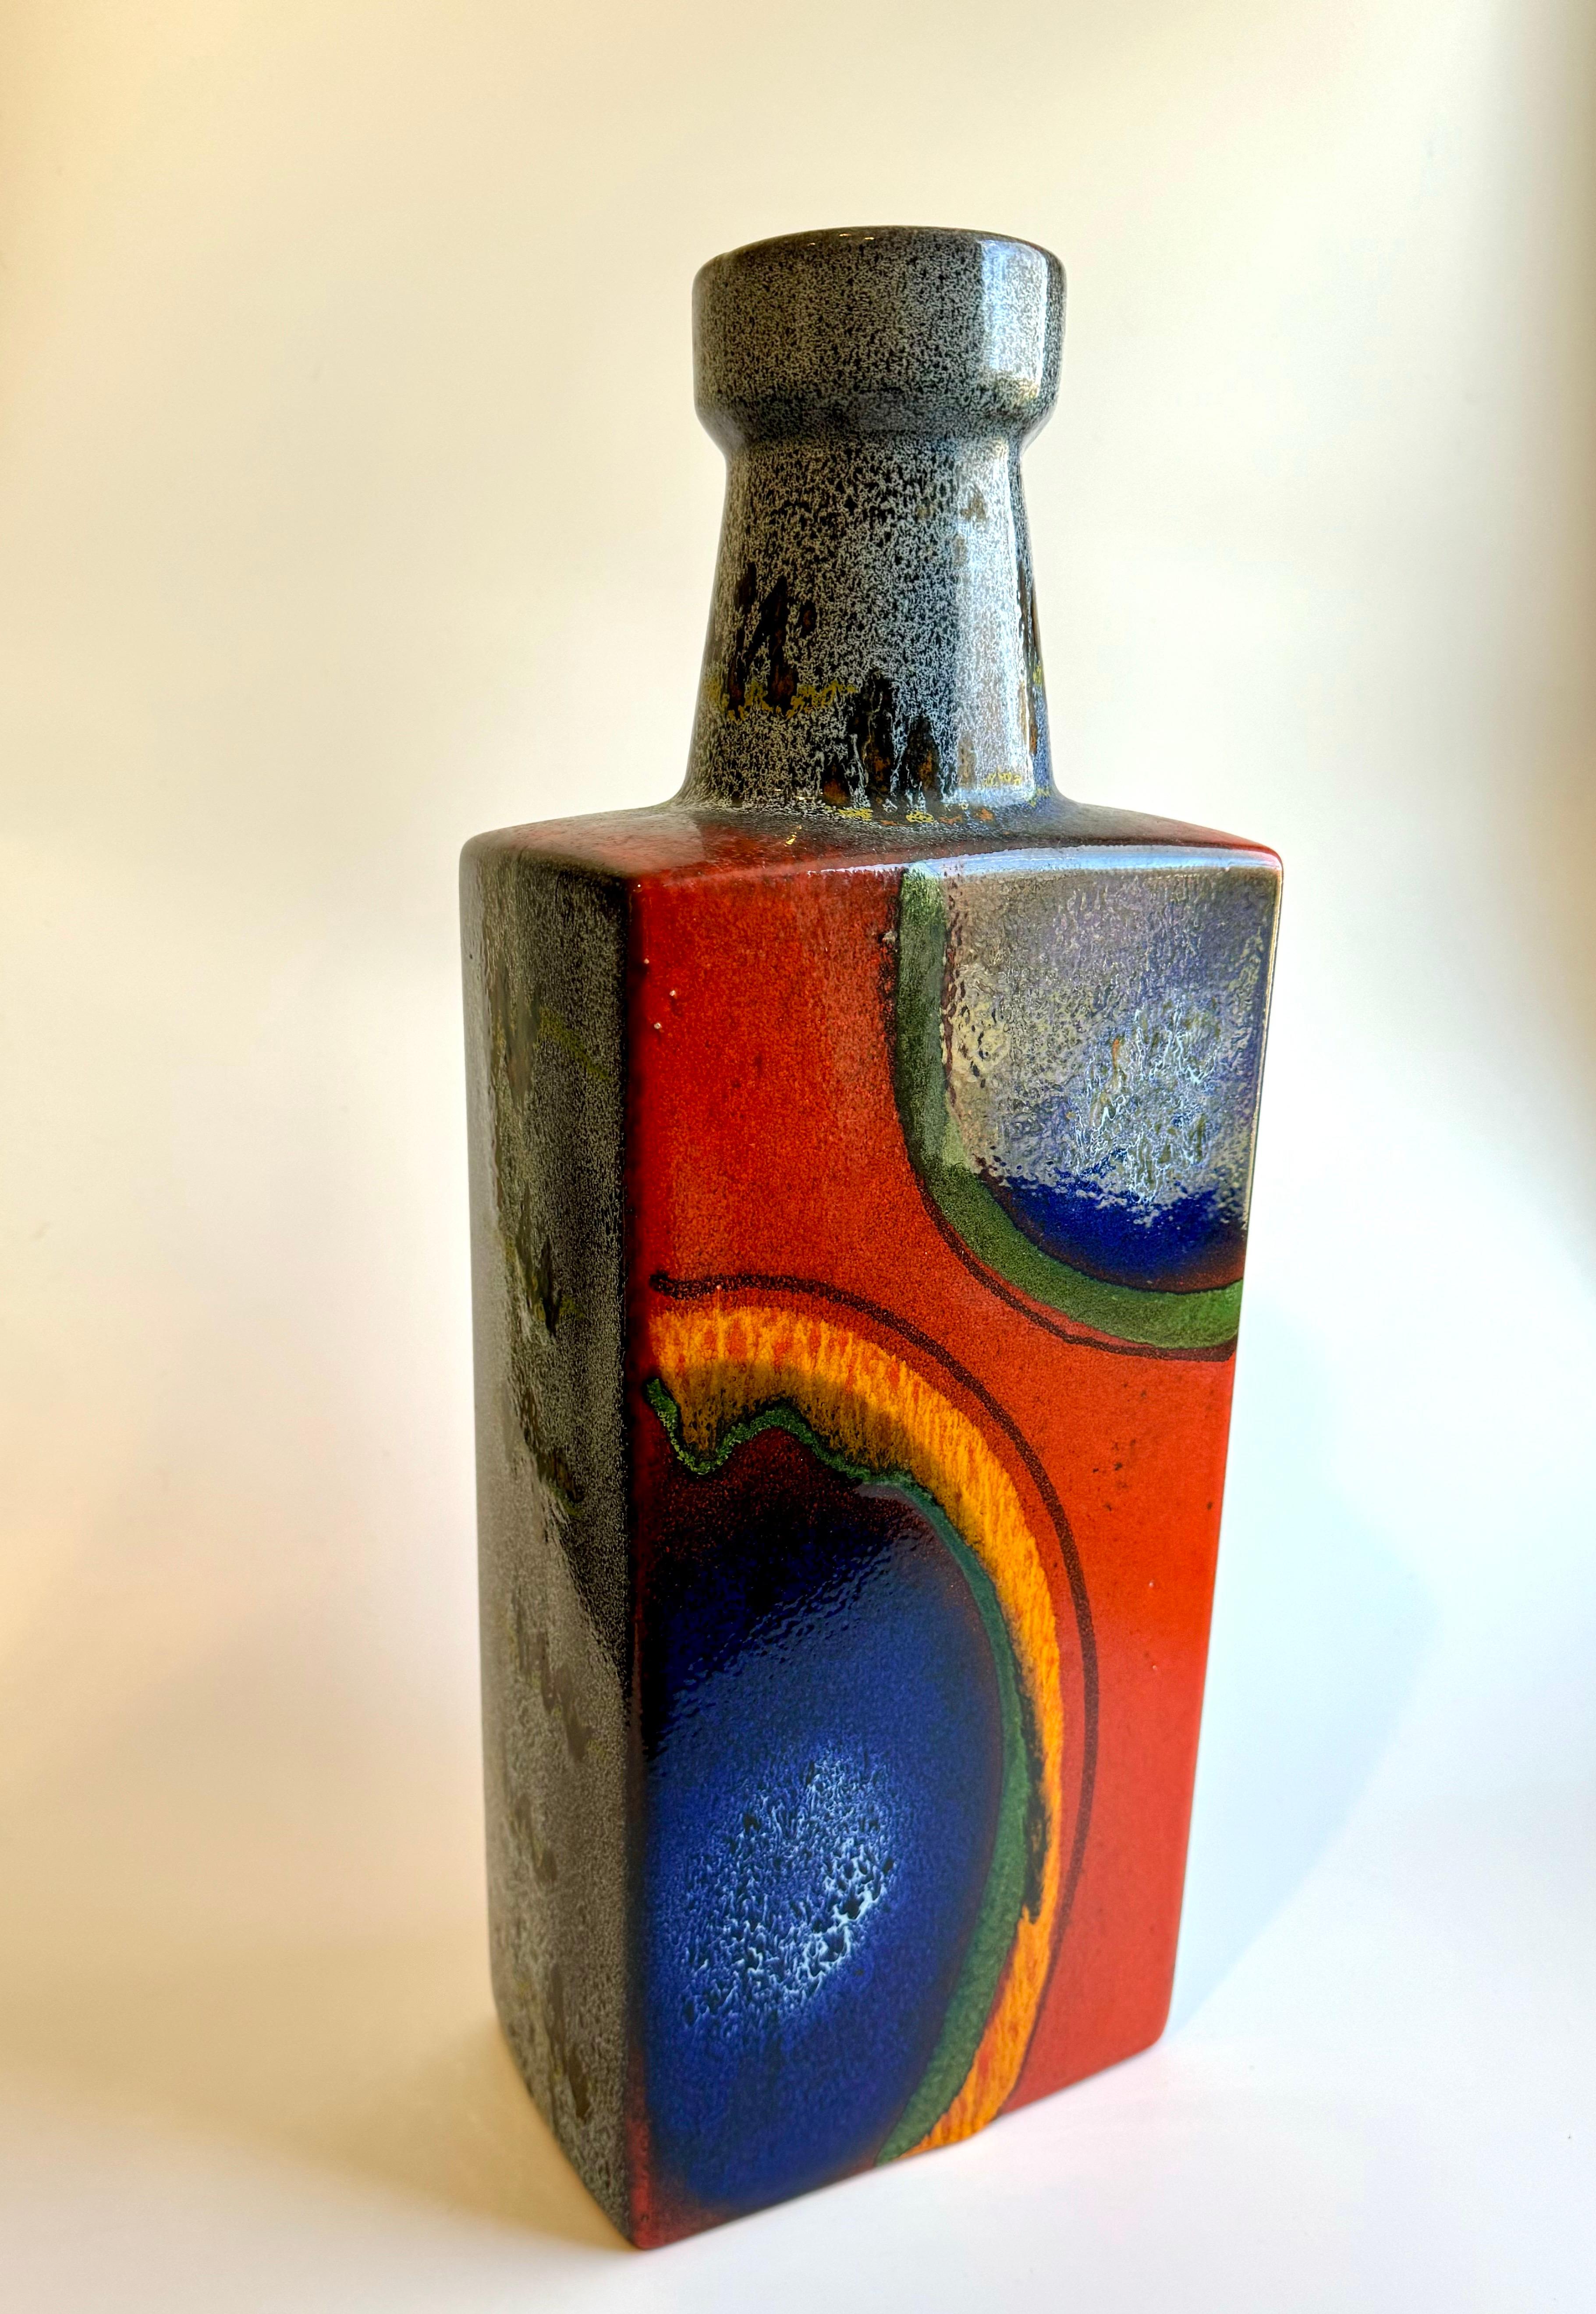 Il s'agit d'un grand vase d'Allemagne de l'Ouest produit par Scheurich Keramik, qui était l'un des plus grands producteurs de céramique au milieu du 20e siècle. Le vase présente une glaçure caractéristique avec une palette de couleurs audacieuses